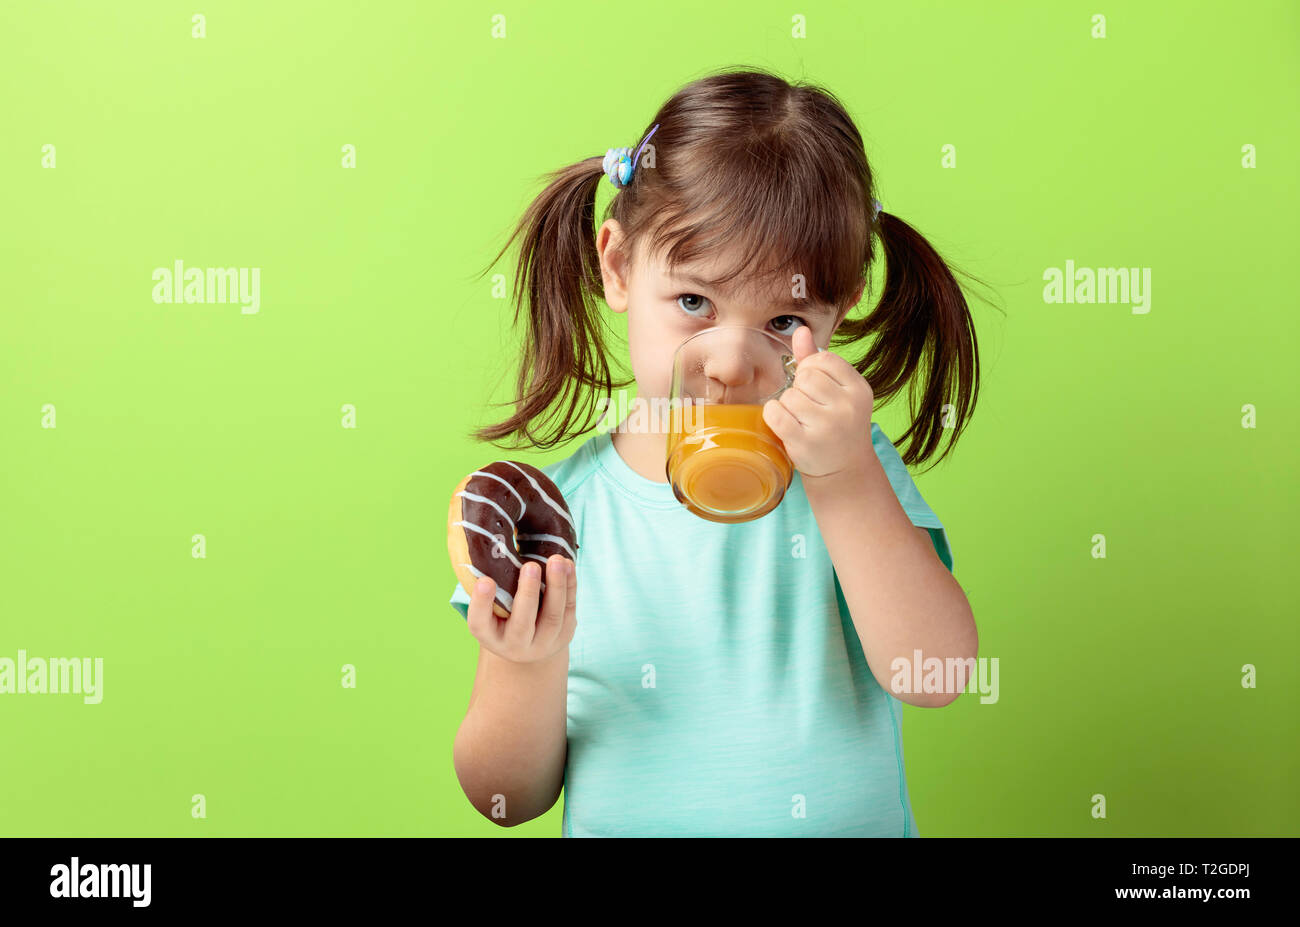 4-Jähriges Mädchen in einem Türkis t-shirt essen und trinken Saft. Das Haar des Mädchens in Schwänze gebunden ist. grünen Hintergrund. Stockfoto